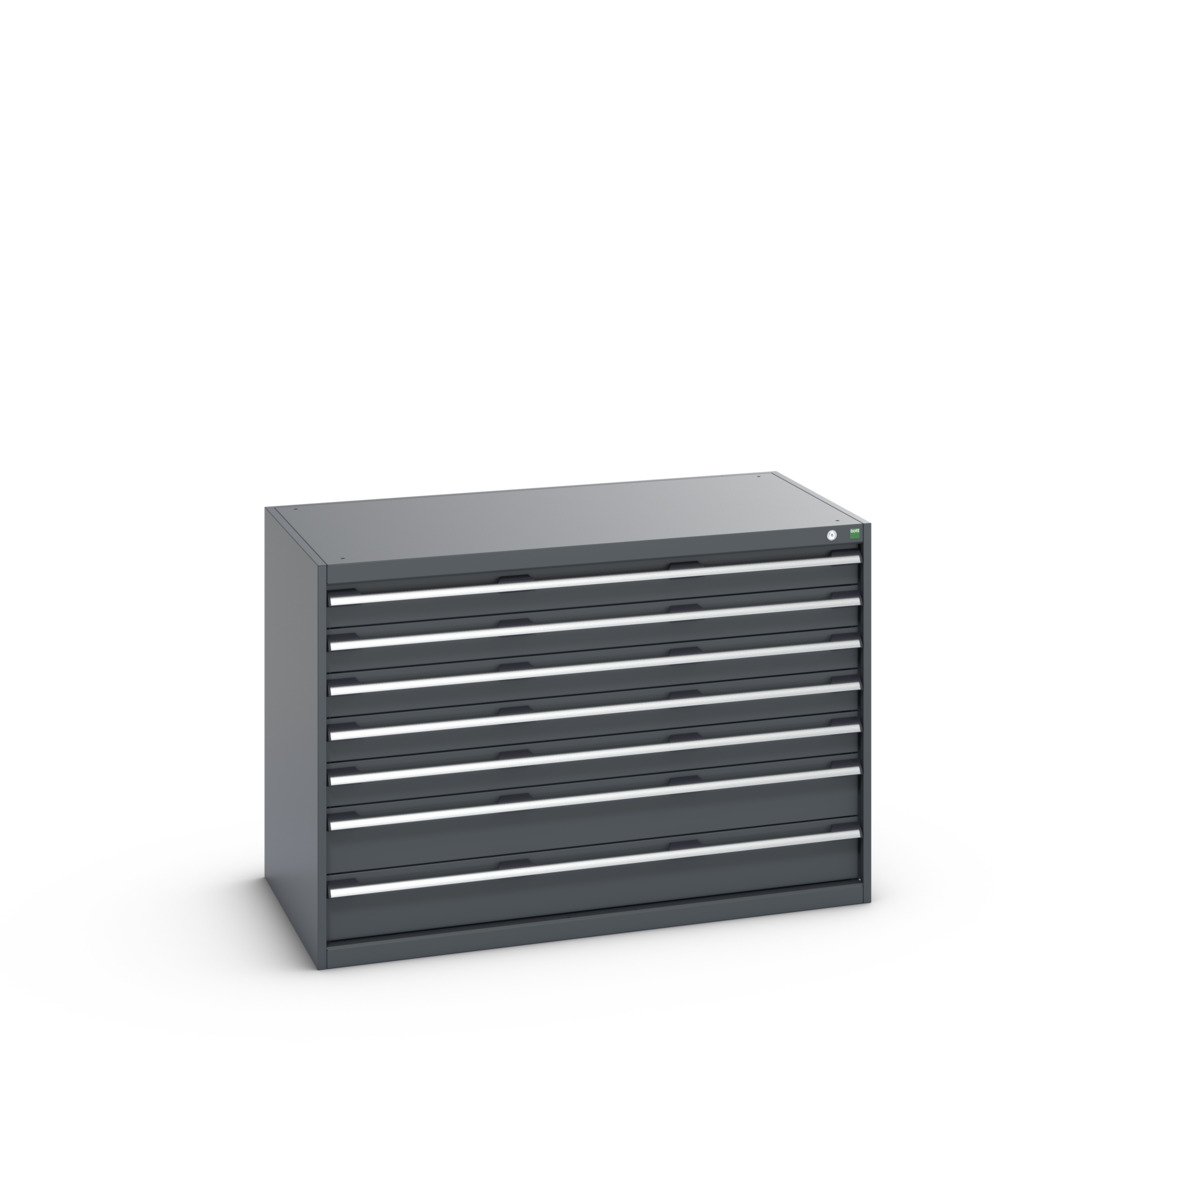 40030088.77V - cubio drawer cabinet